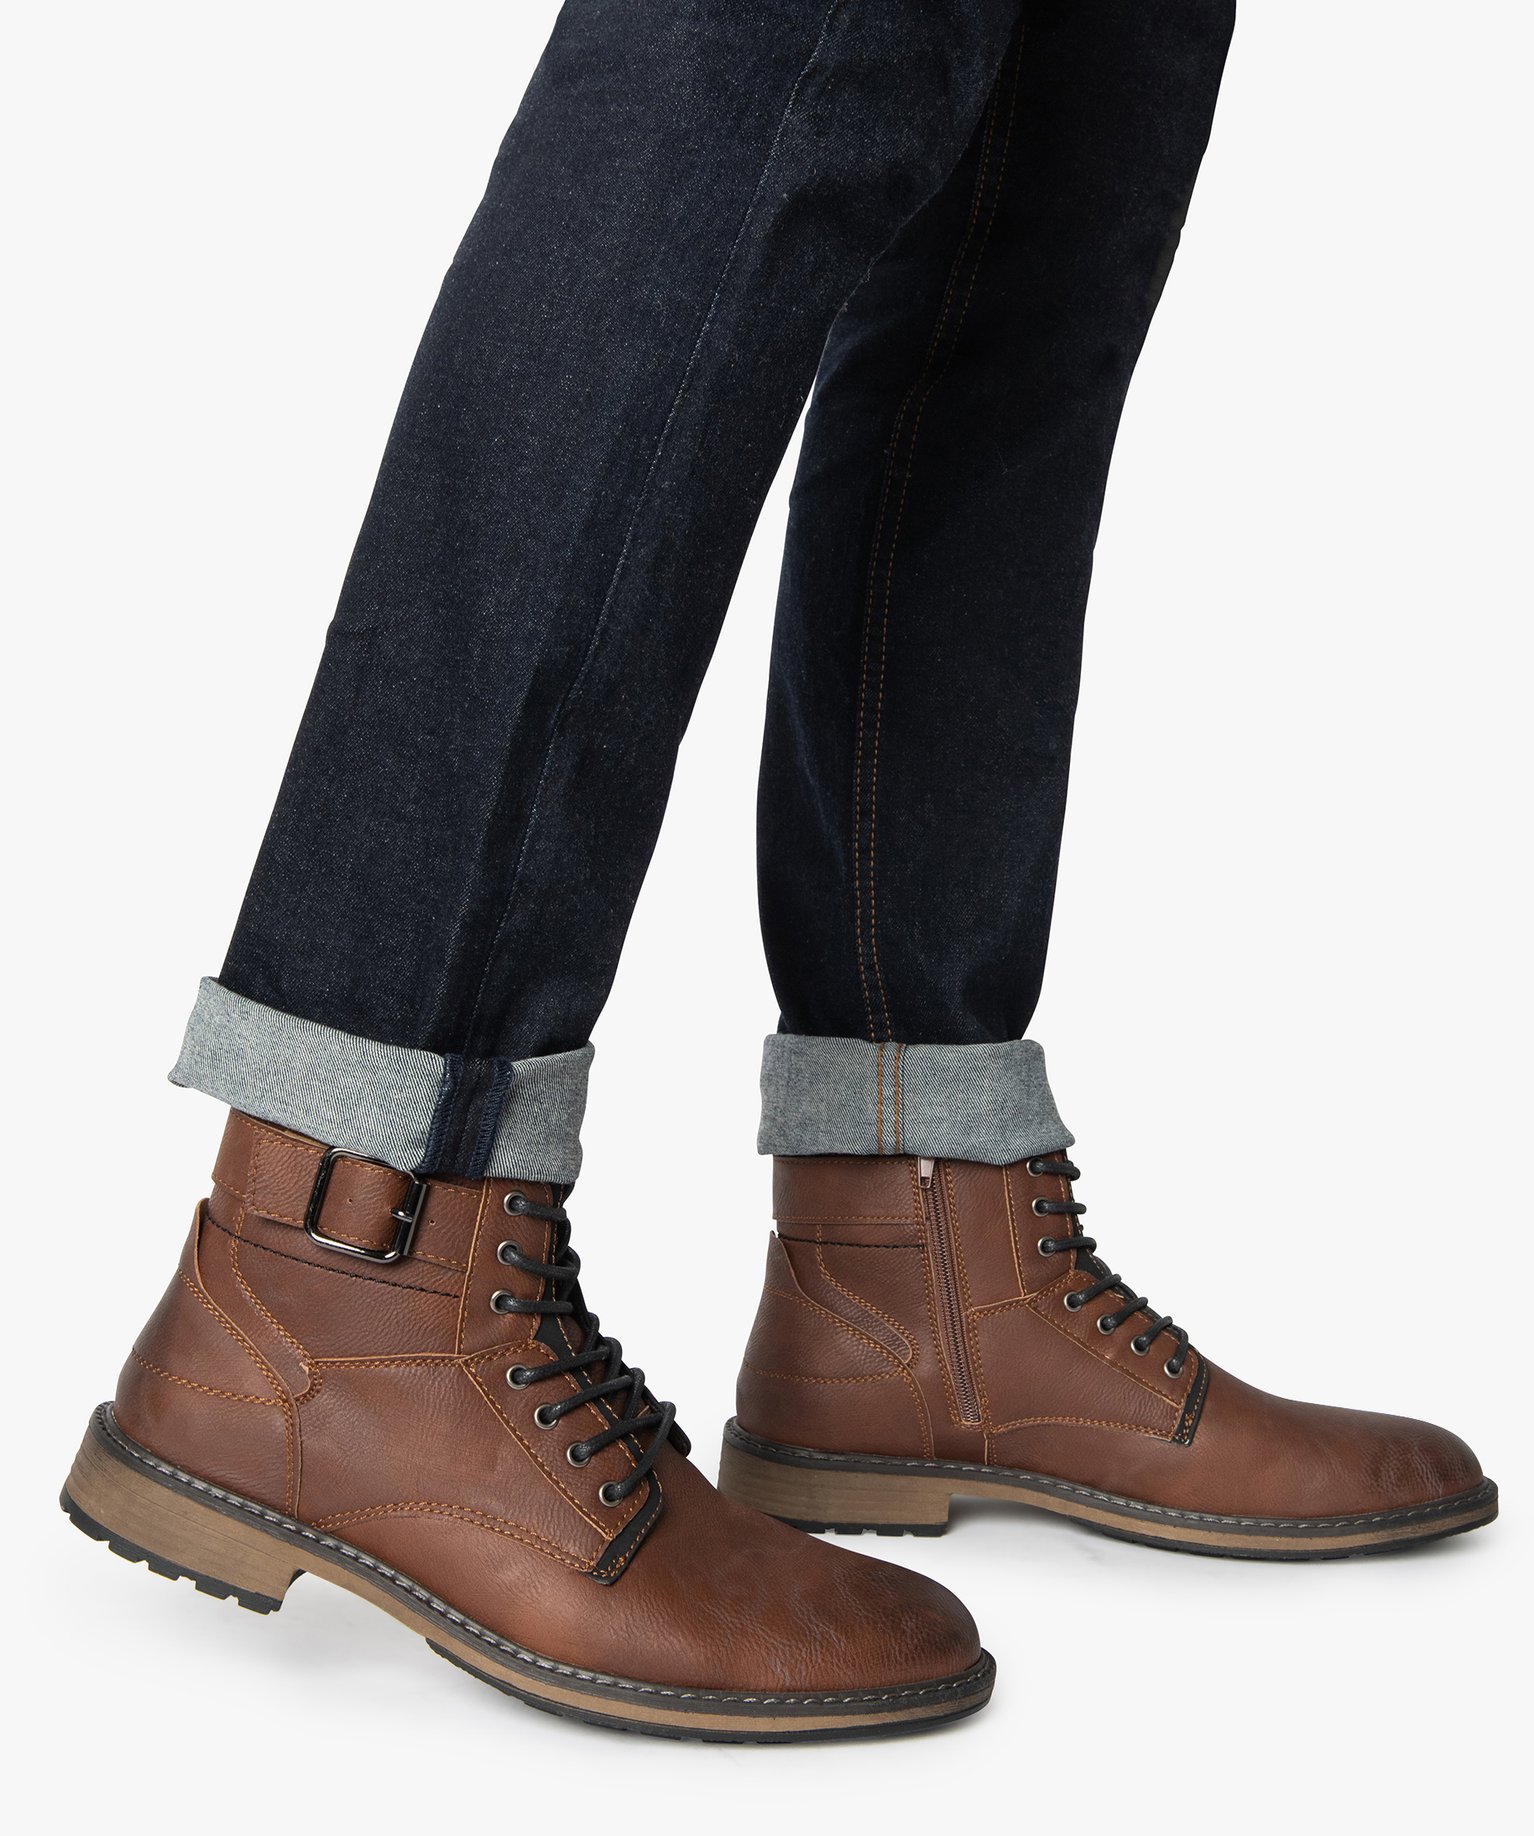 boots homme unis zippés avec lacets et boucle décorative